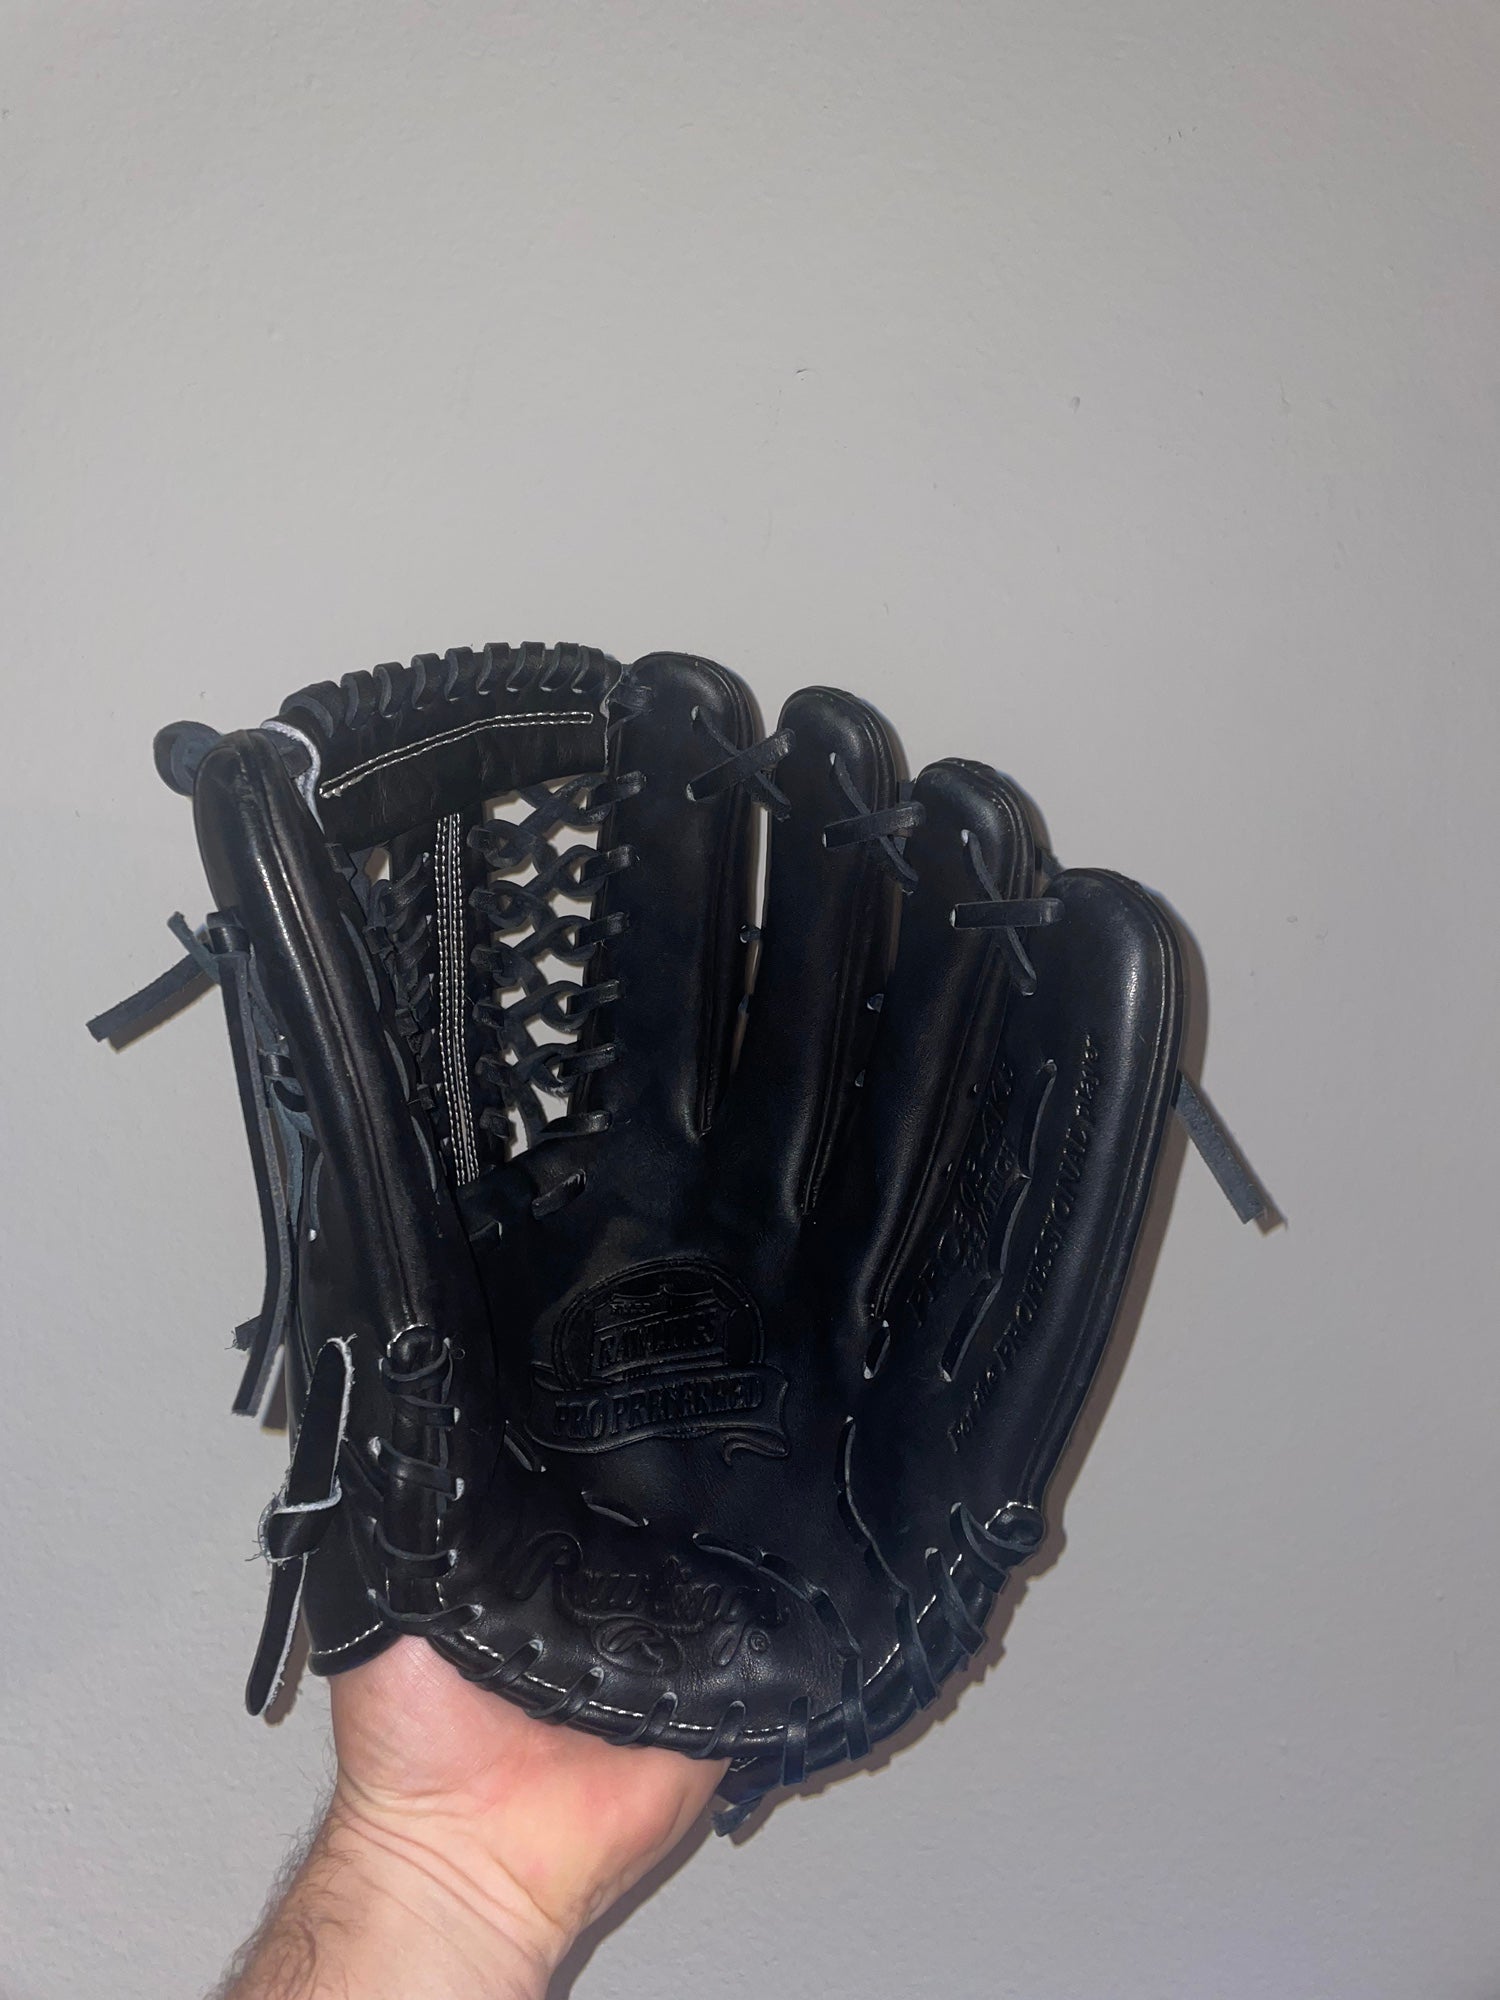 What Pros Wear: Joc Pederson's Rawlings Pro Preferred PRO303 Glove